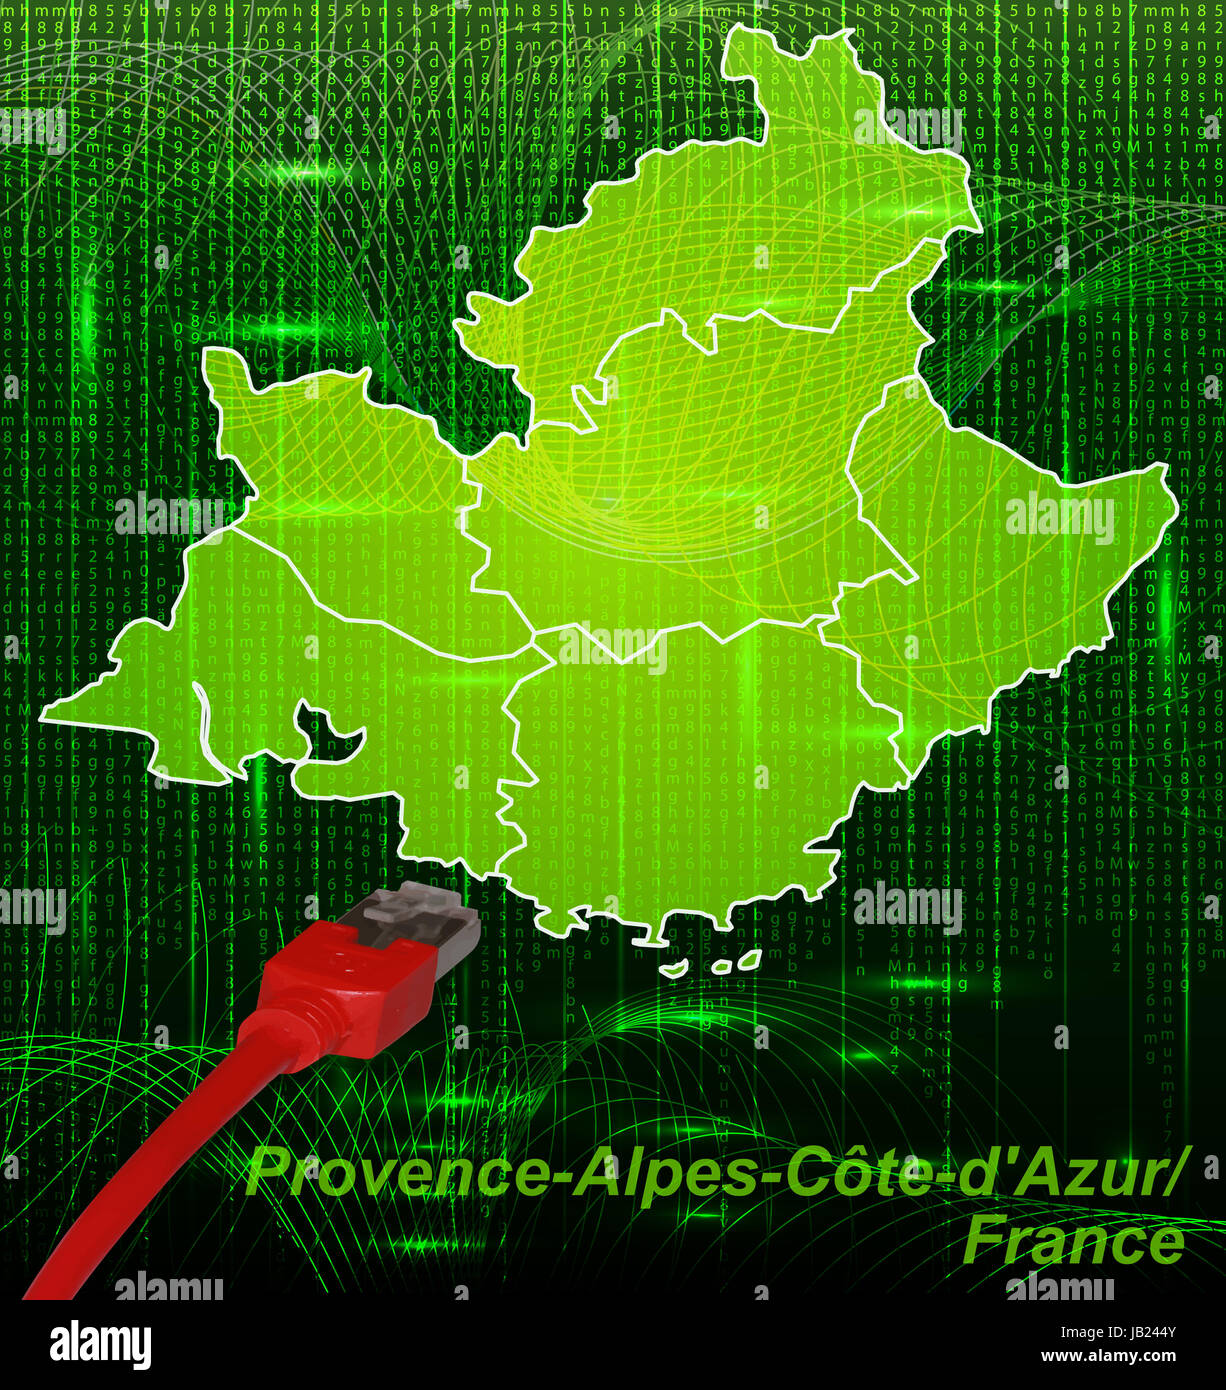 Provence-Alpes-Côte d'Azur en Frankreich als dans Grenzkarte mit dem neuen Netzwerkdesign Grenzen. Durch die Gestaltung ansprechende fügt sich die Karte perfekt dans Ihr Vorhaben ein. Banque D'Images